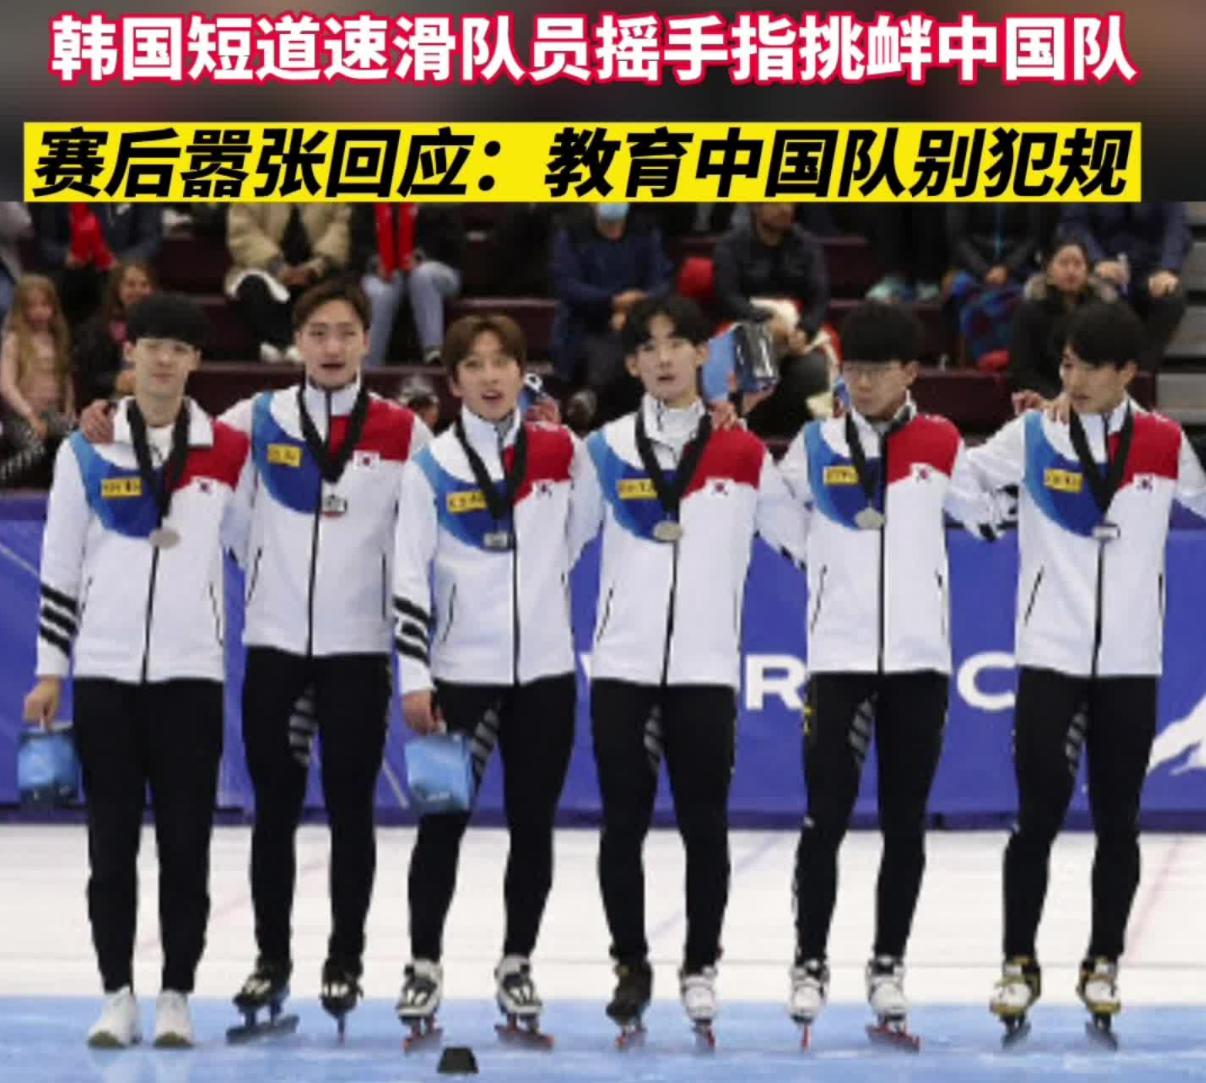 韩国队竖指挑衅中国队再放狠话，声称要教训中国队，建议滑联禁赛